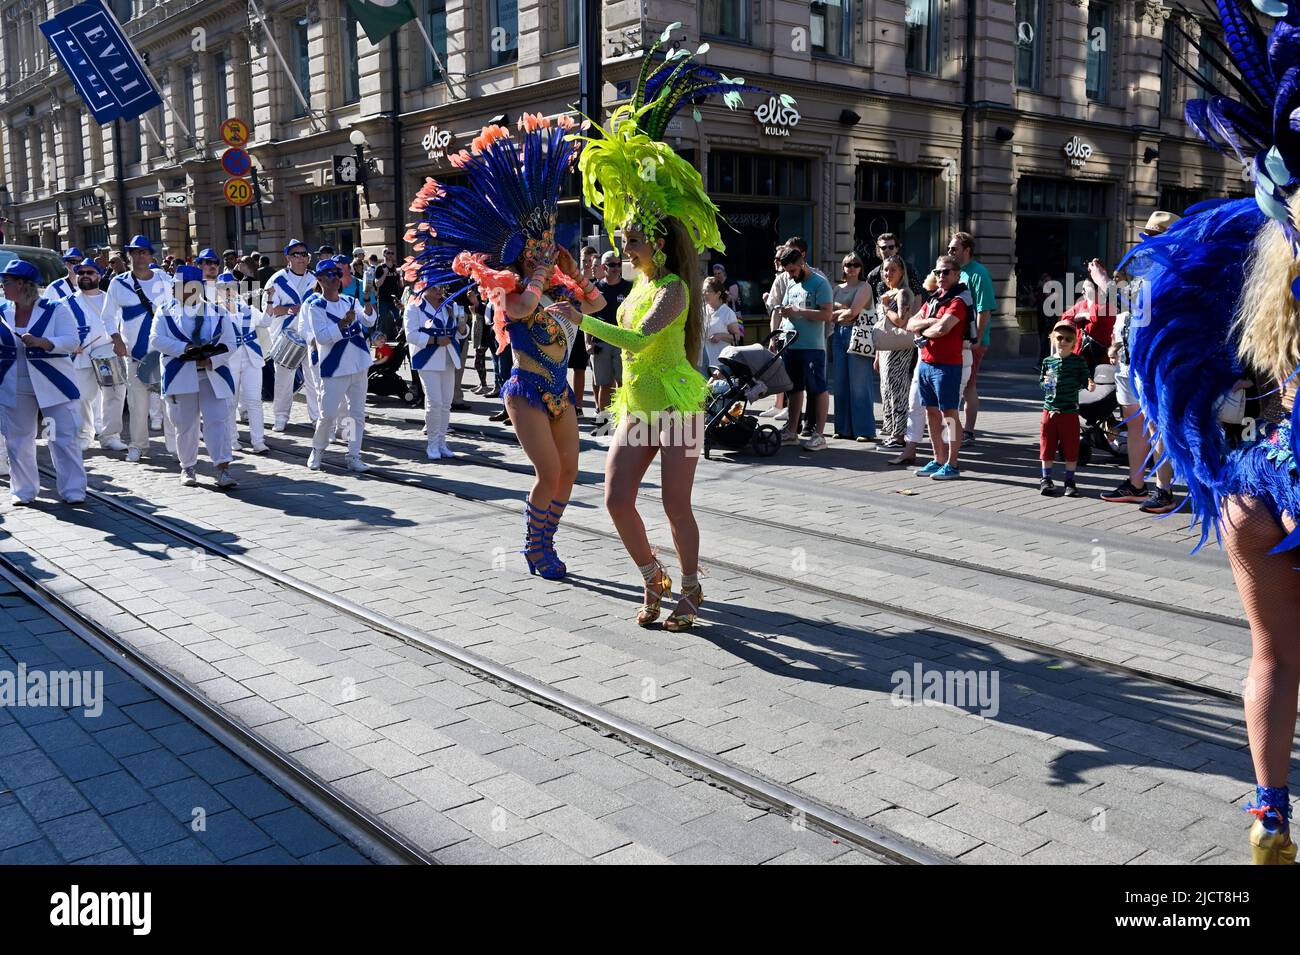 Helsinki, Finlandia – 11 de junio de 2022: Carnaval de Samba de Helsinki, verano tradicional. El evento incluye danza, música, talleres, actuaciones y la cultura brasileña! El evento se ha celebrado desde 1991 y este año se estima que el número de espectadores aumentará a 50.000! Foto de stock